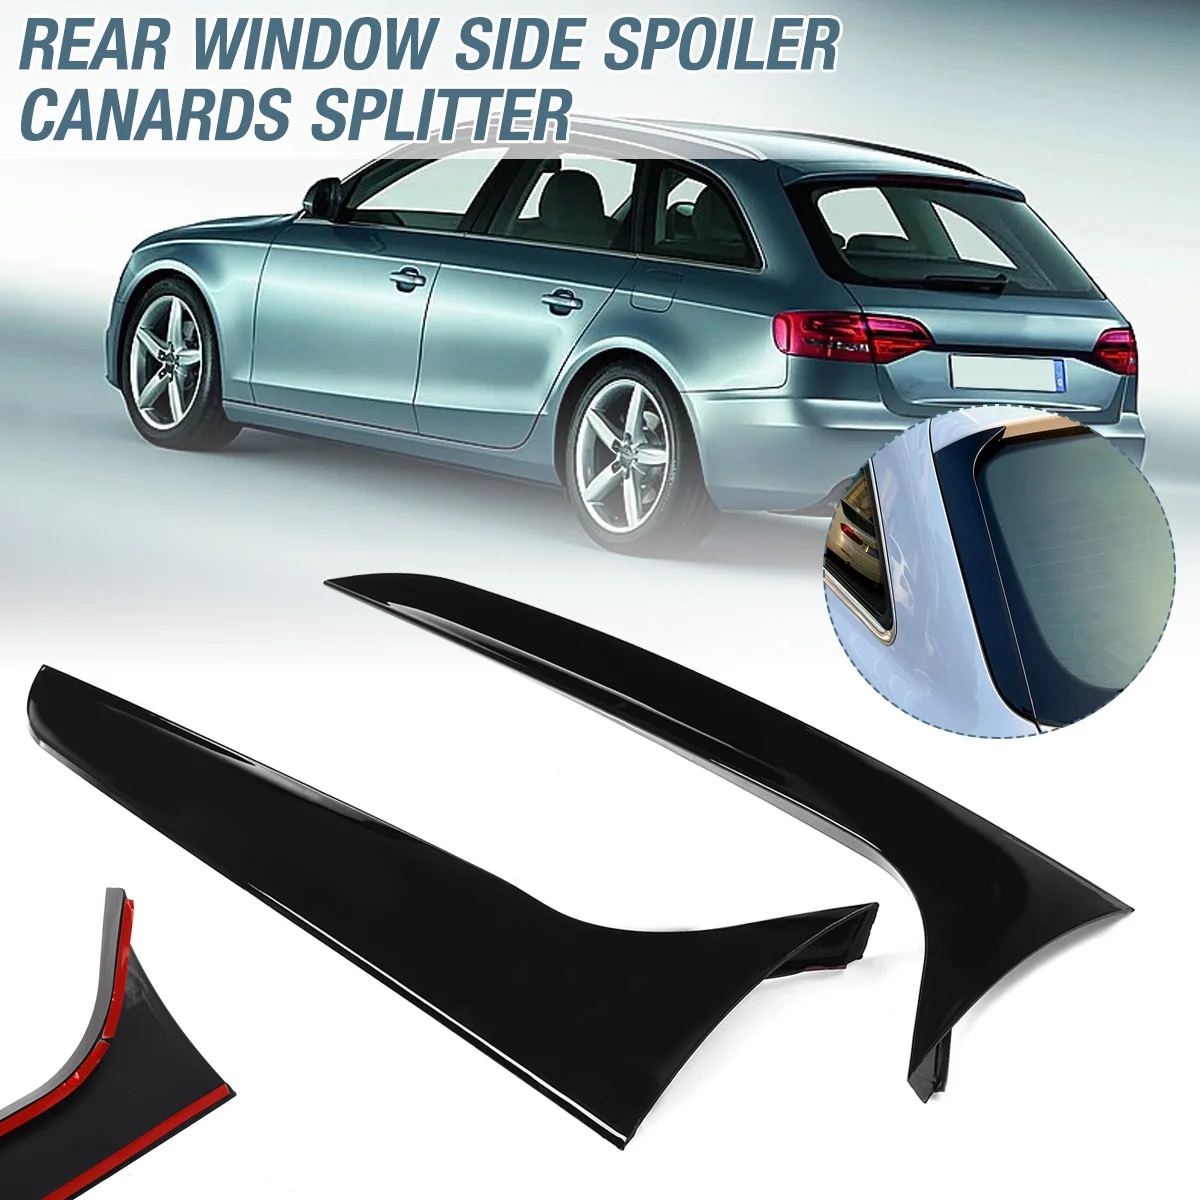 2Pcs Car Rear Window Side Spoiler Spoiler Wing Canard Canards Splitter For Audi A4 B8 Allroad Avant 2009-2016